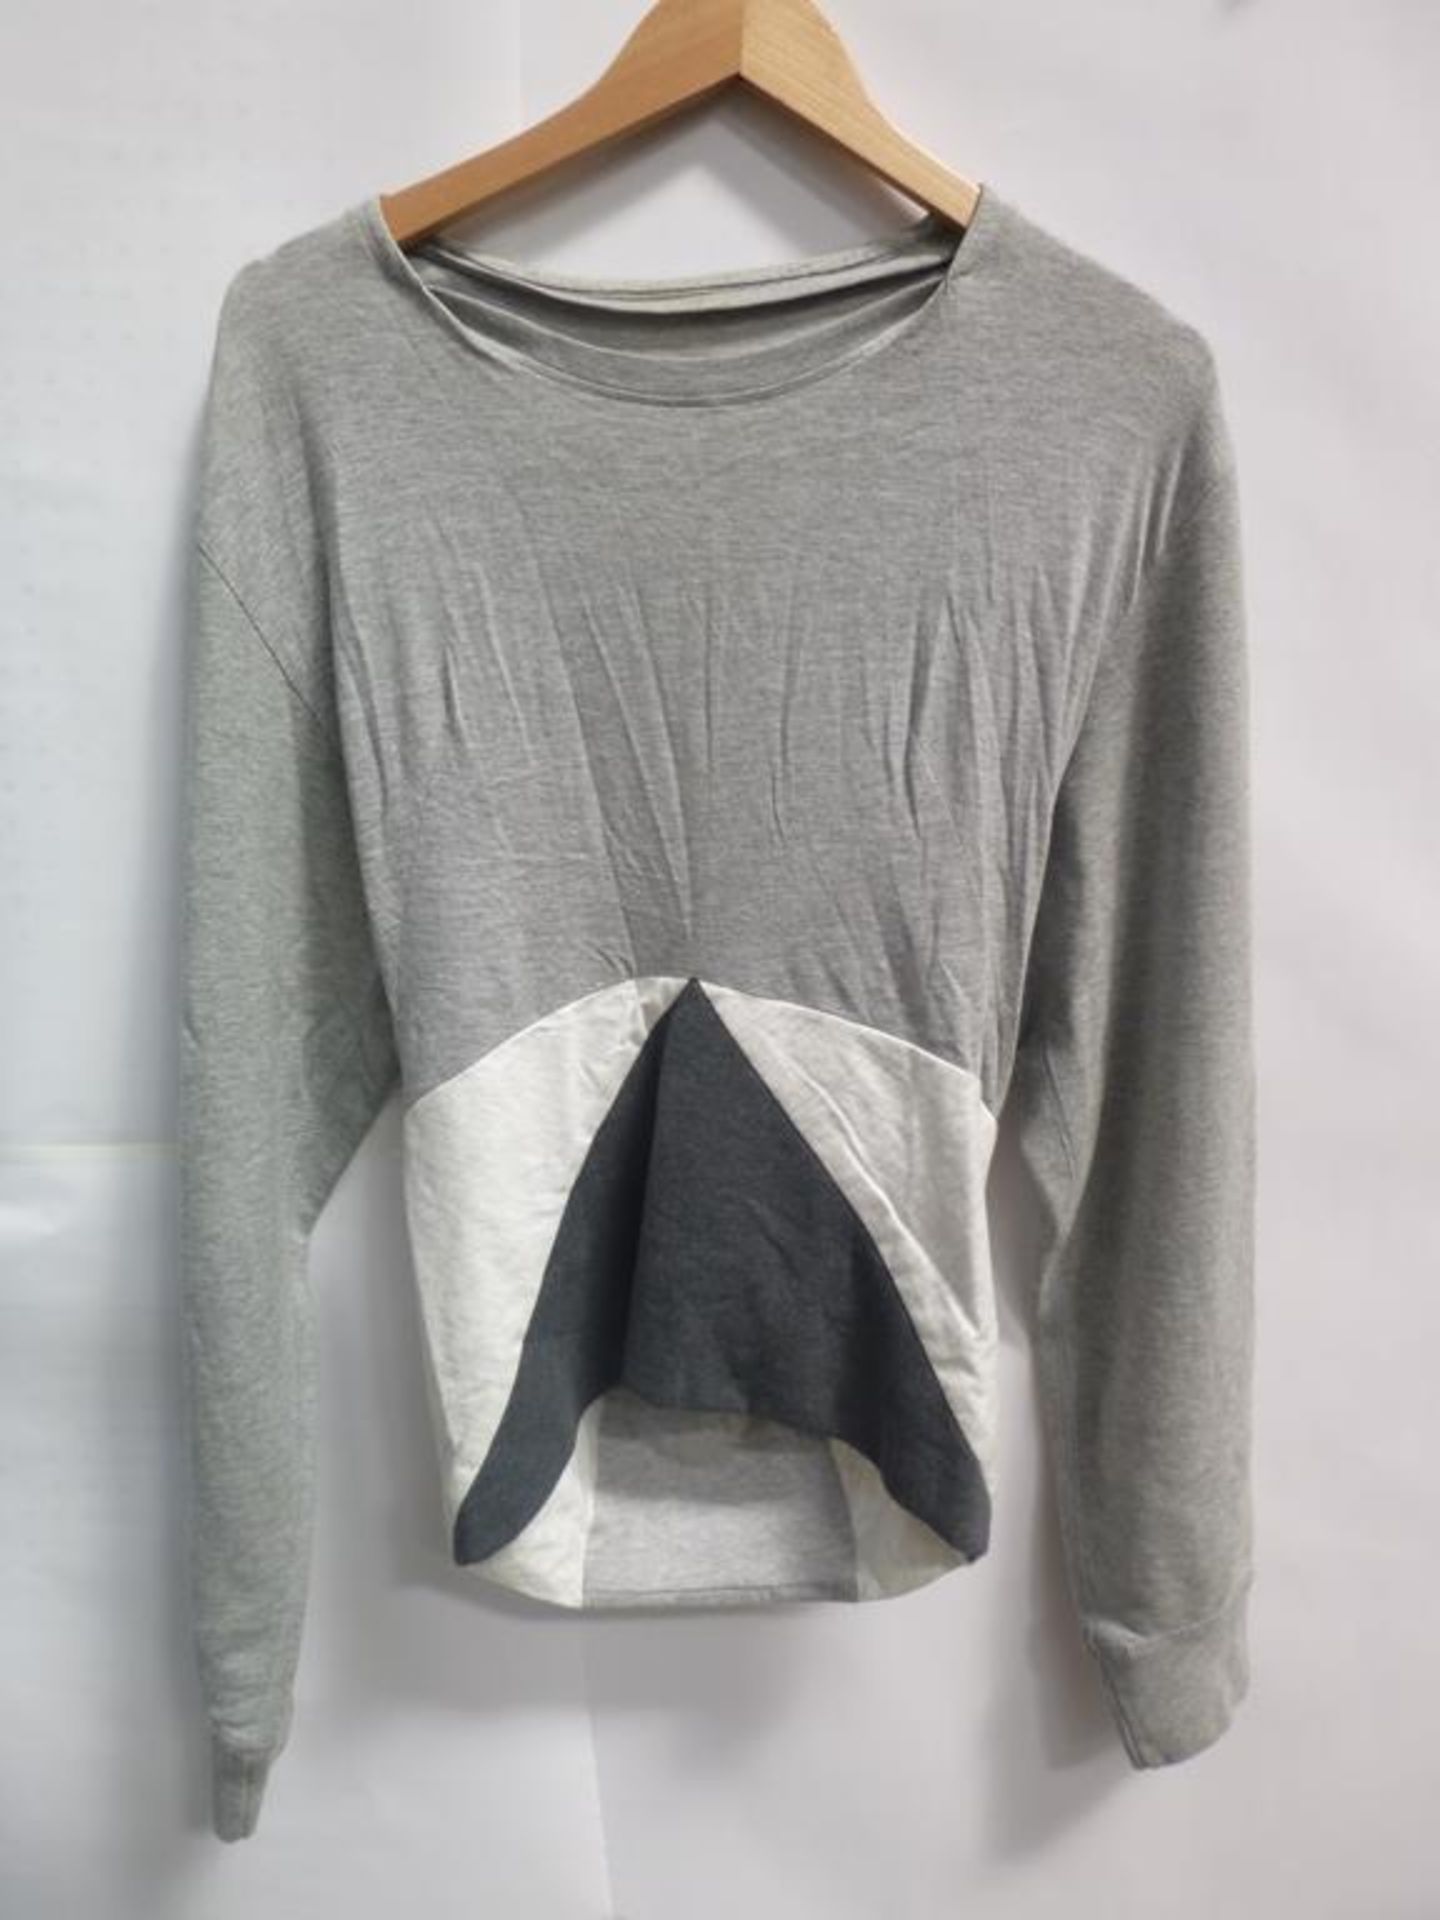 A Patti Print Sleaveless Shirt (M), a Jersey Tube Skirt Joan Grey (L), a Grey and White Sweat Shirt - Image 2 of 4